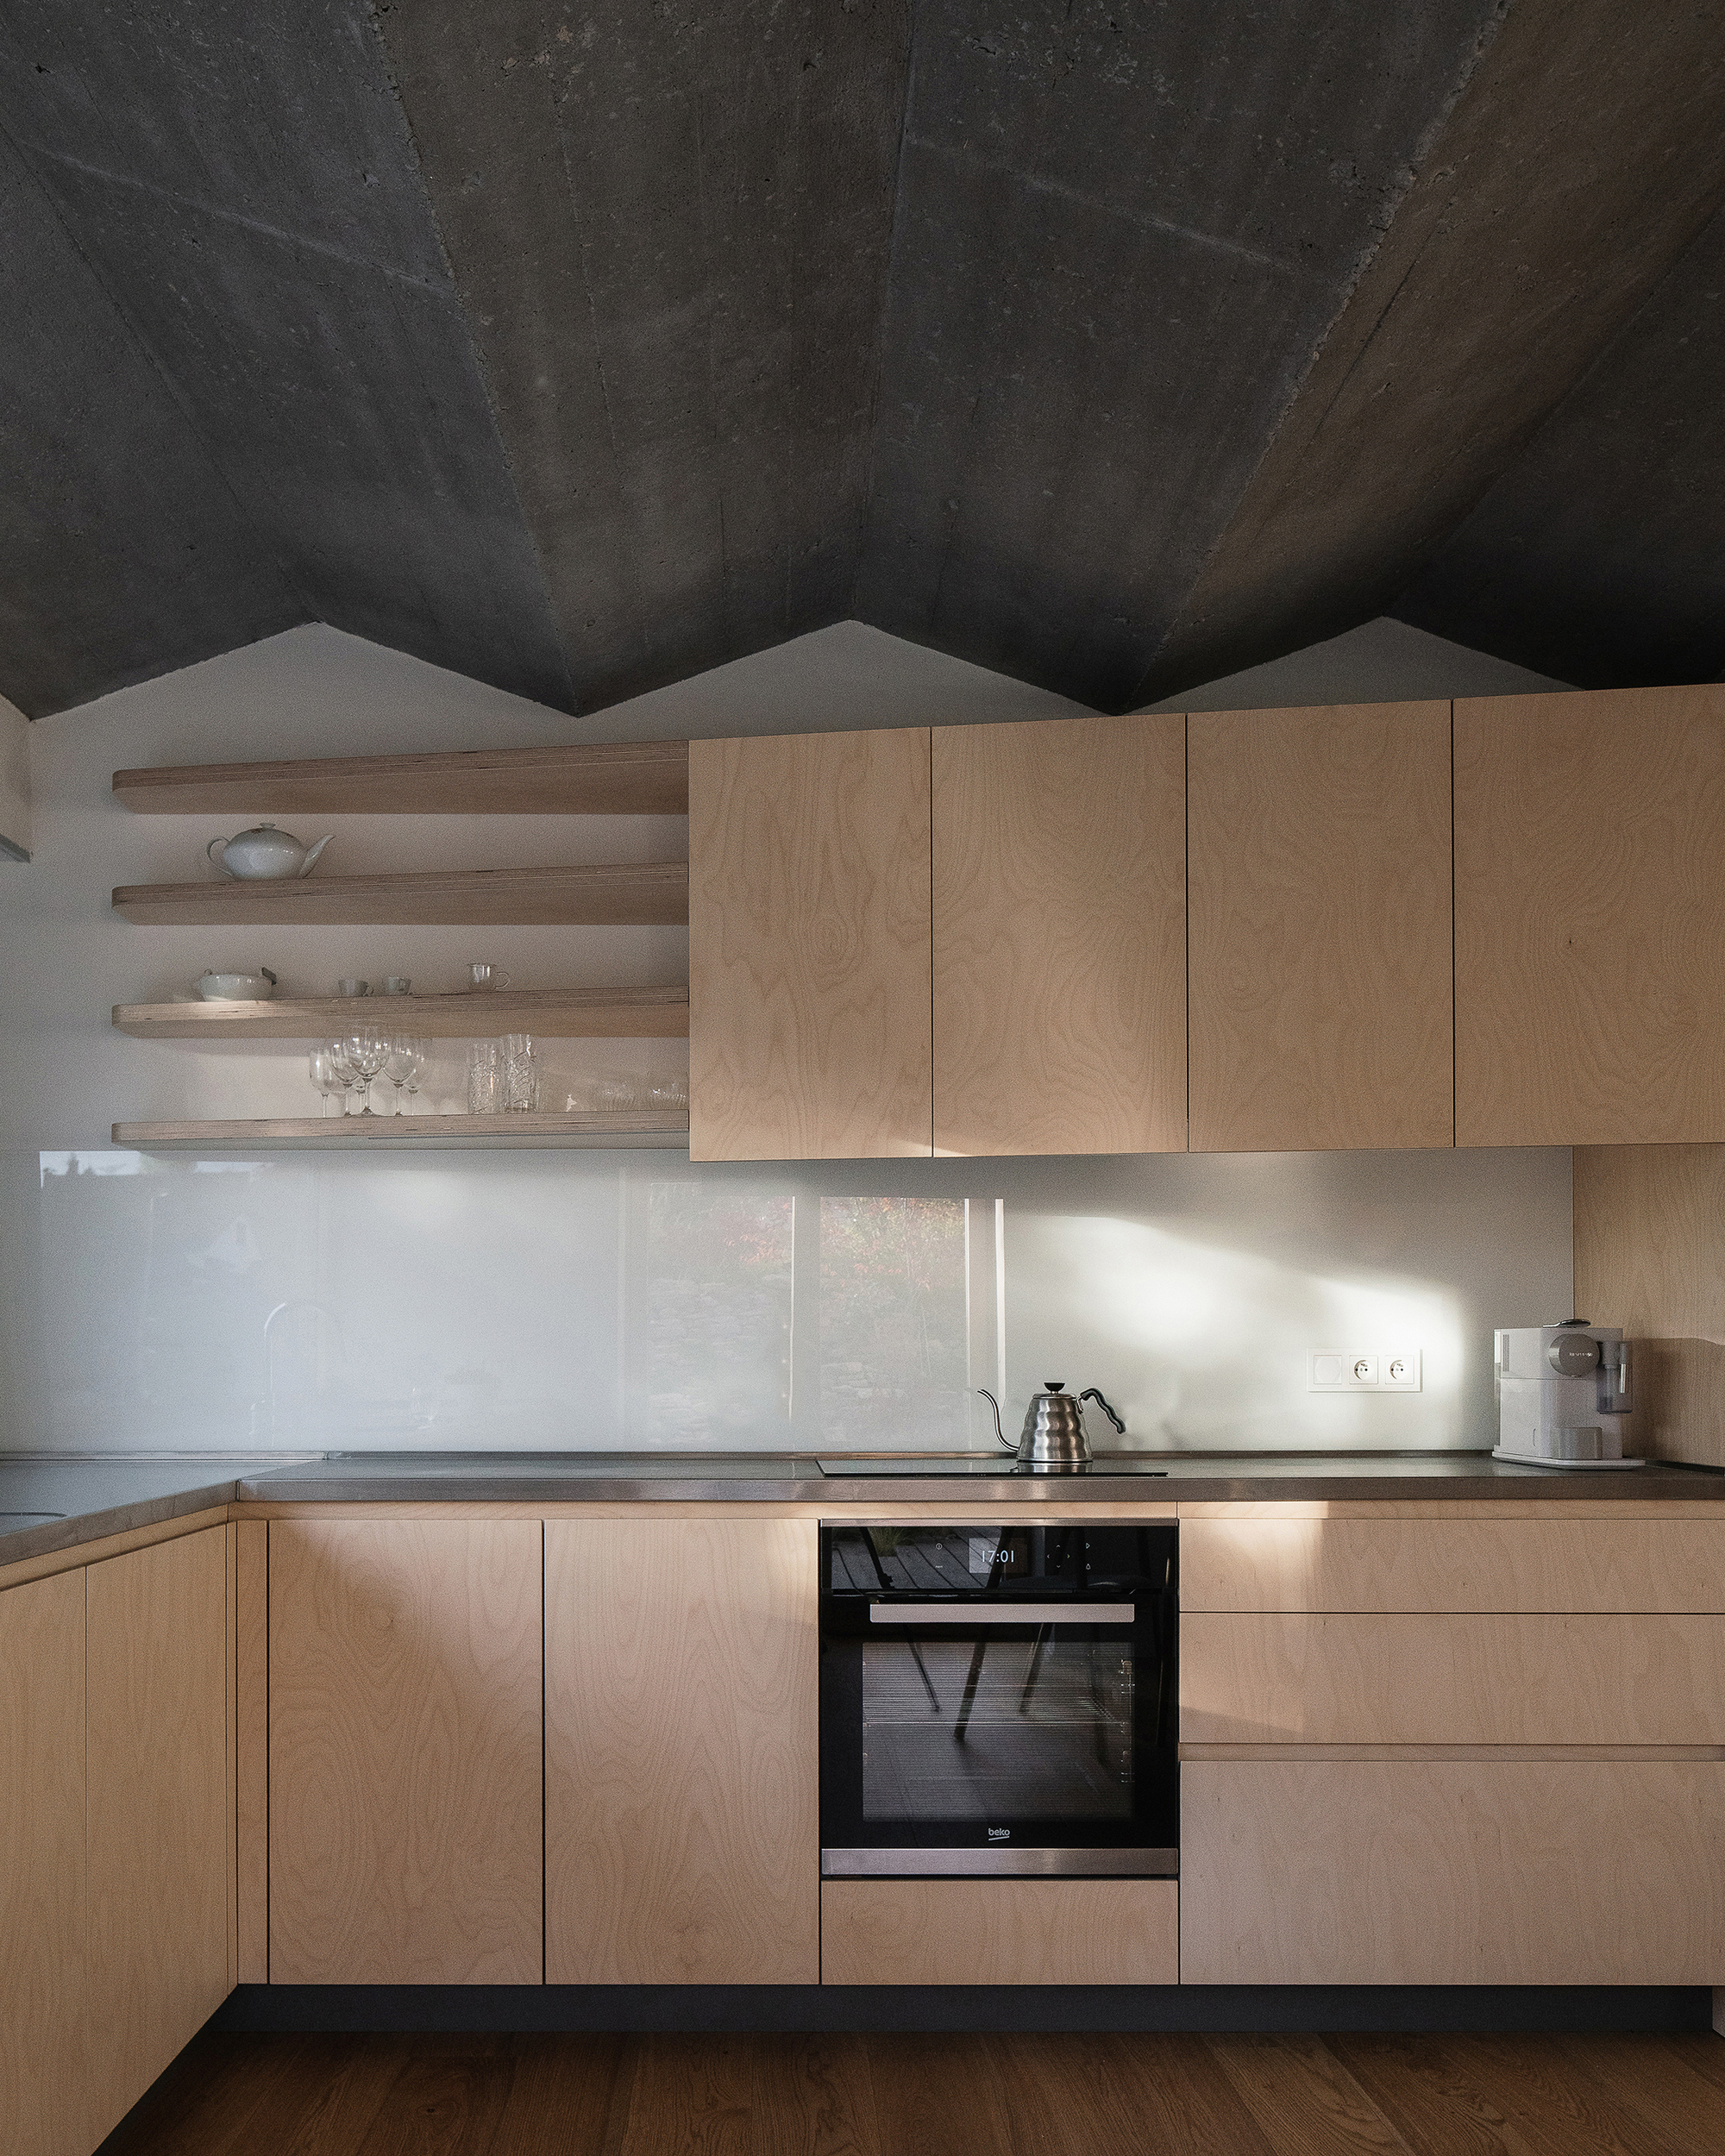 House in Zbraslav by Martin Neruda Architektura, kitchen with zig zag ceiling